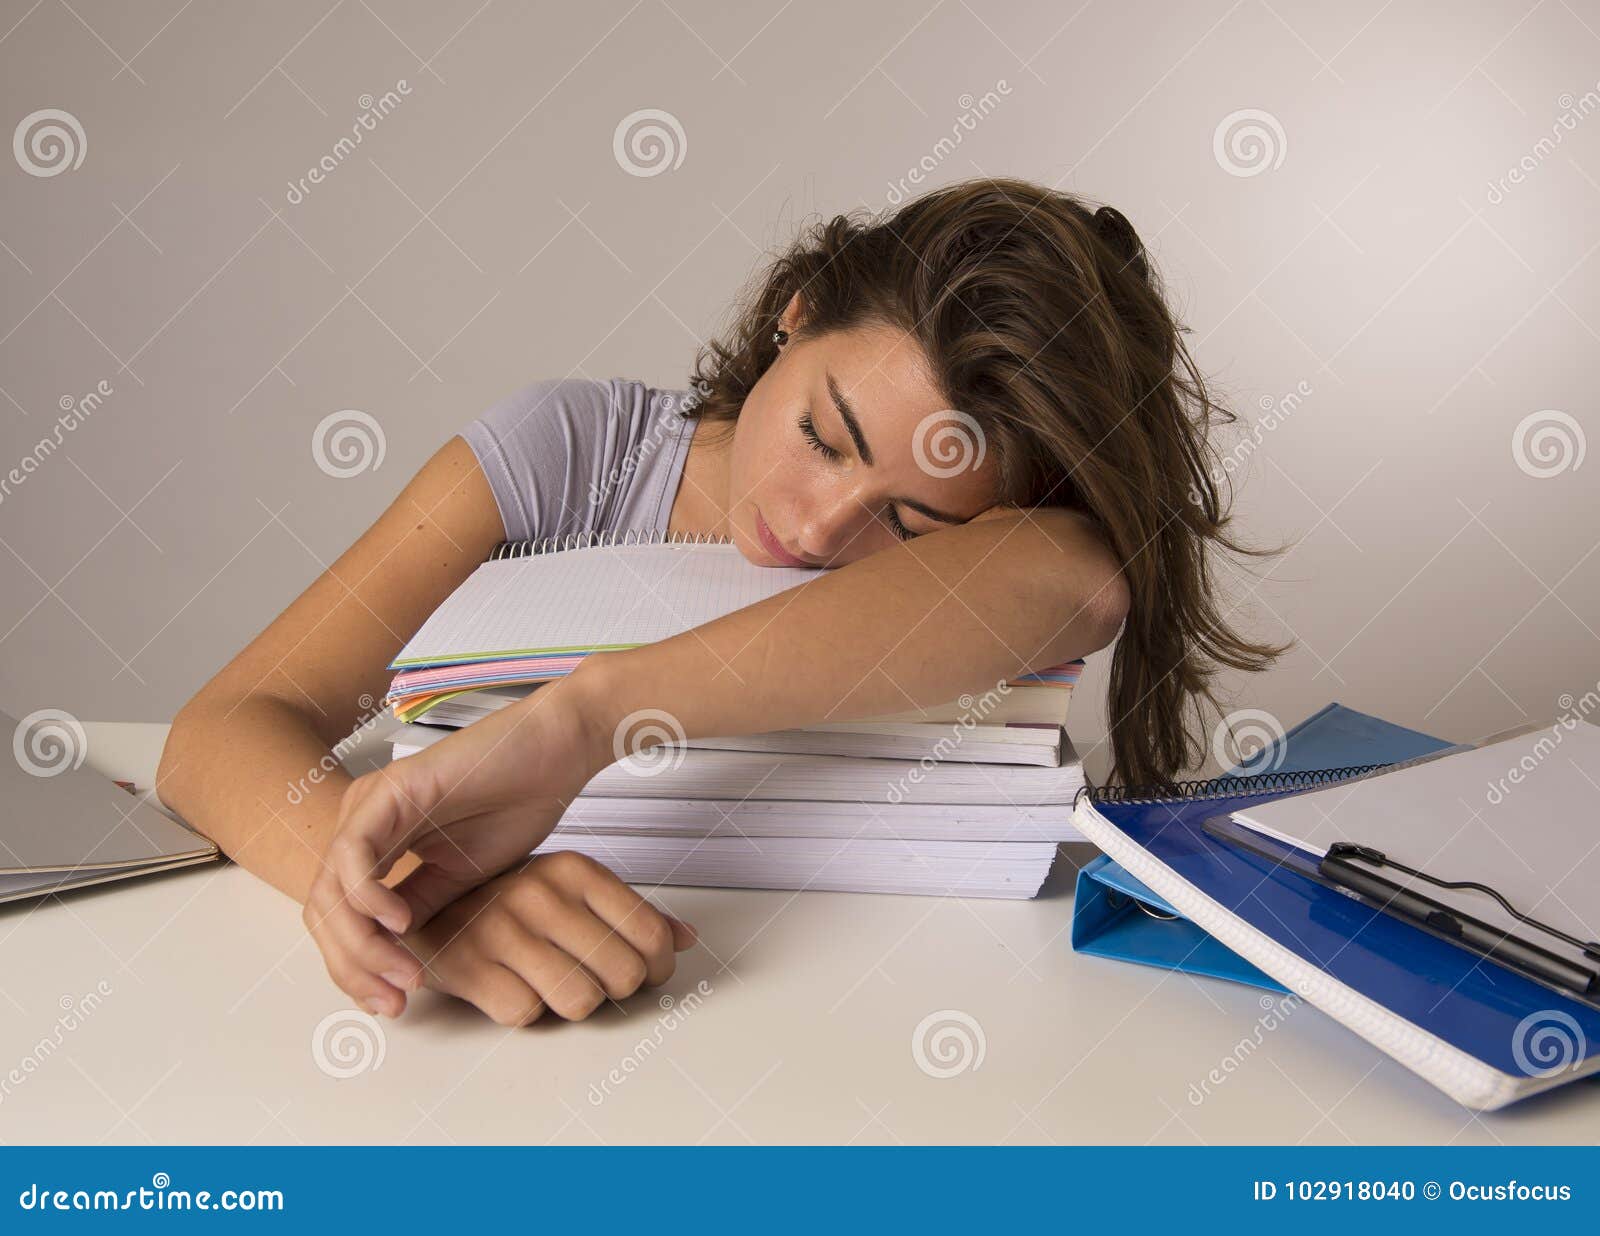 Сплю со студенткой. Девушка после учебы. Девушка облокотилась на книжки. Арт уставшая студентка.